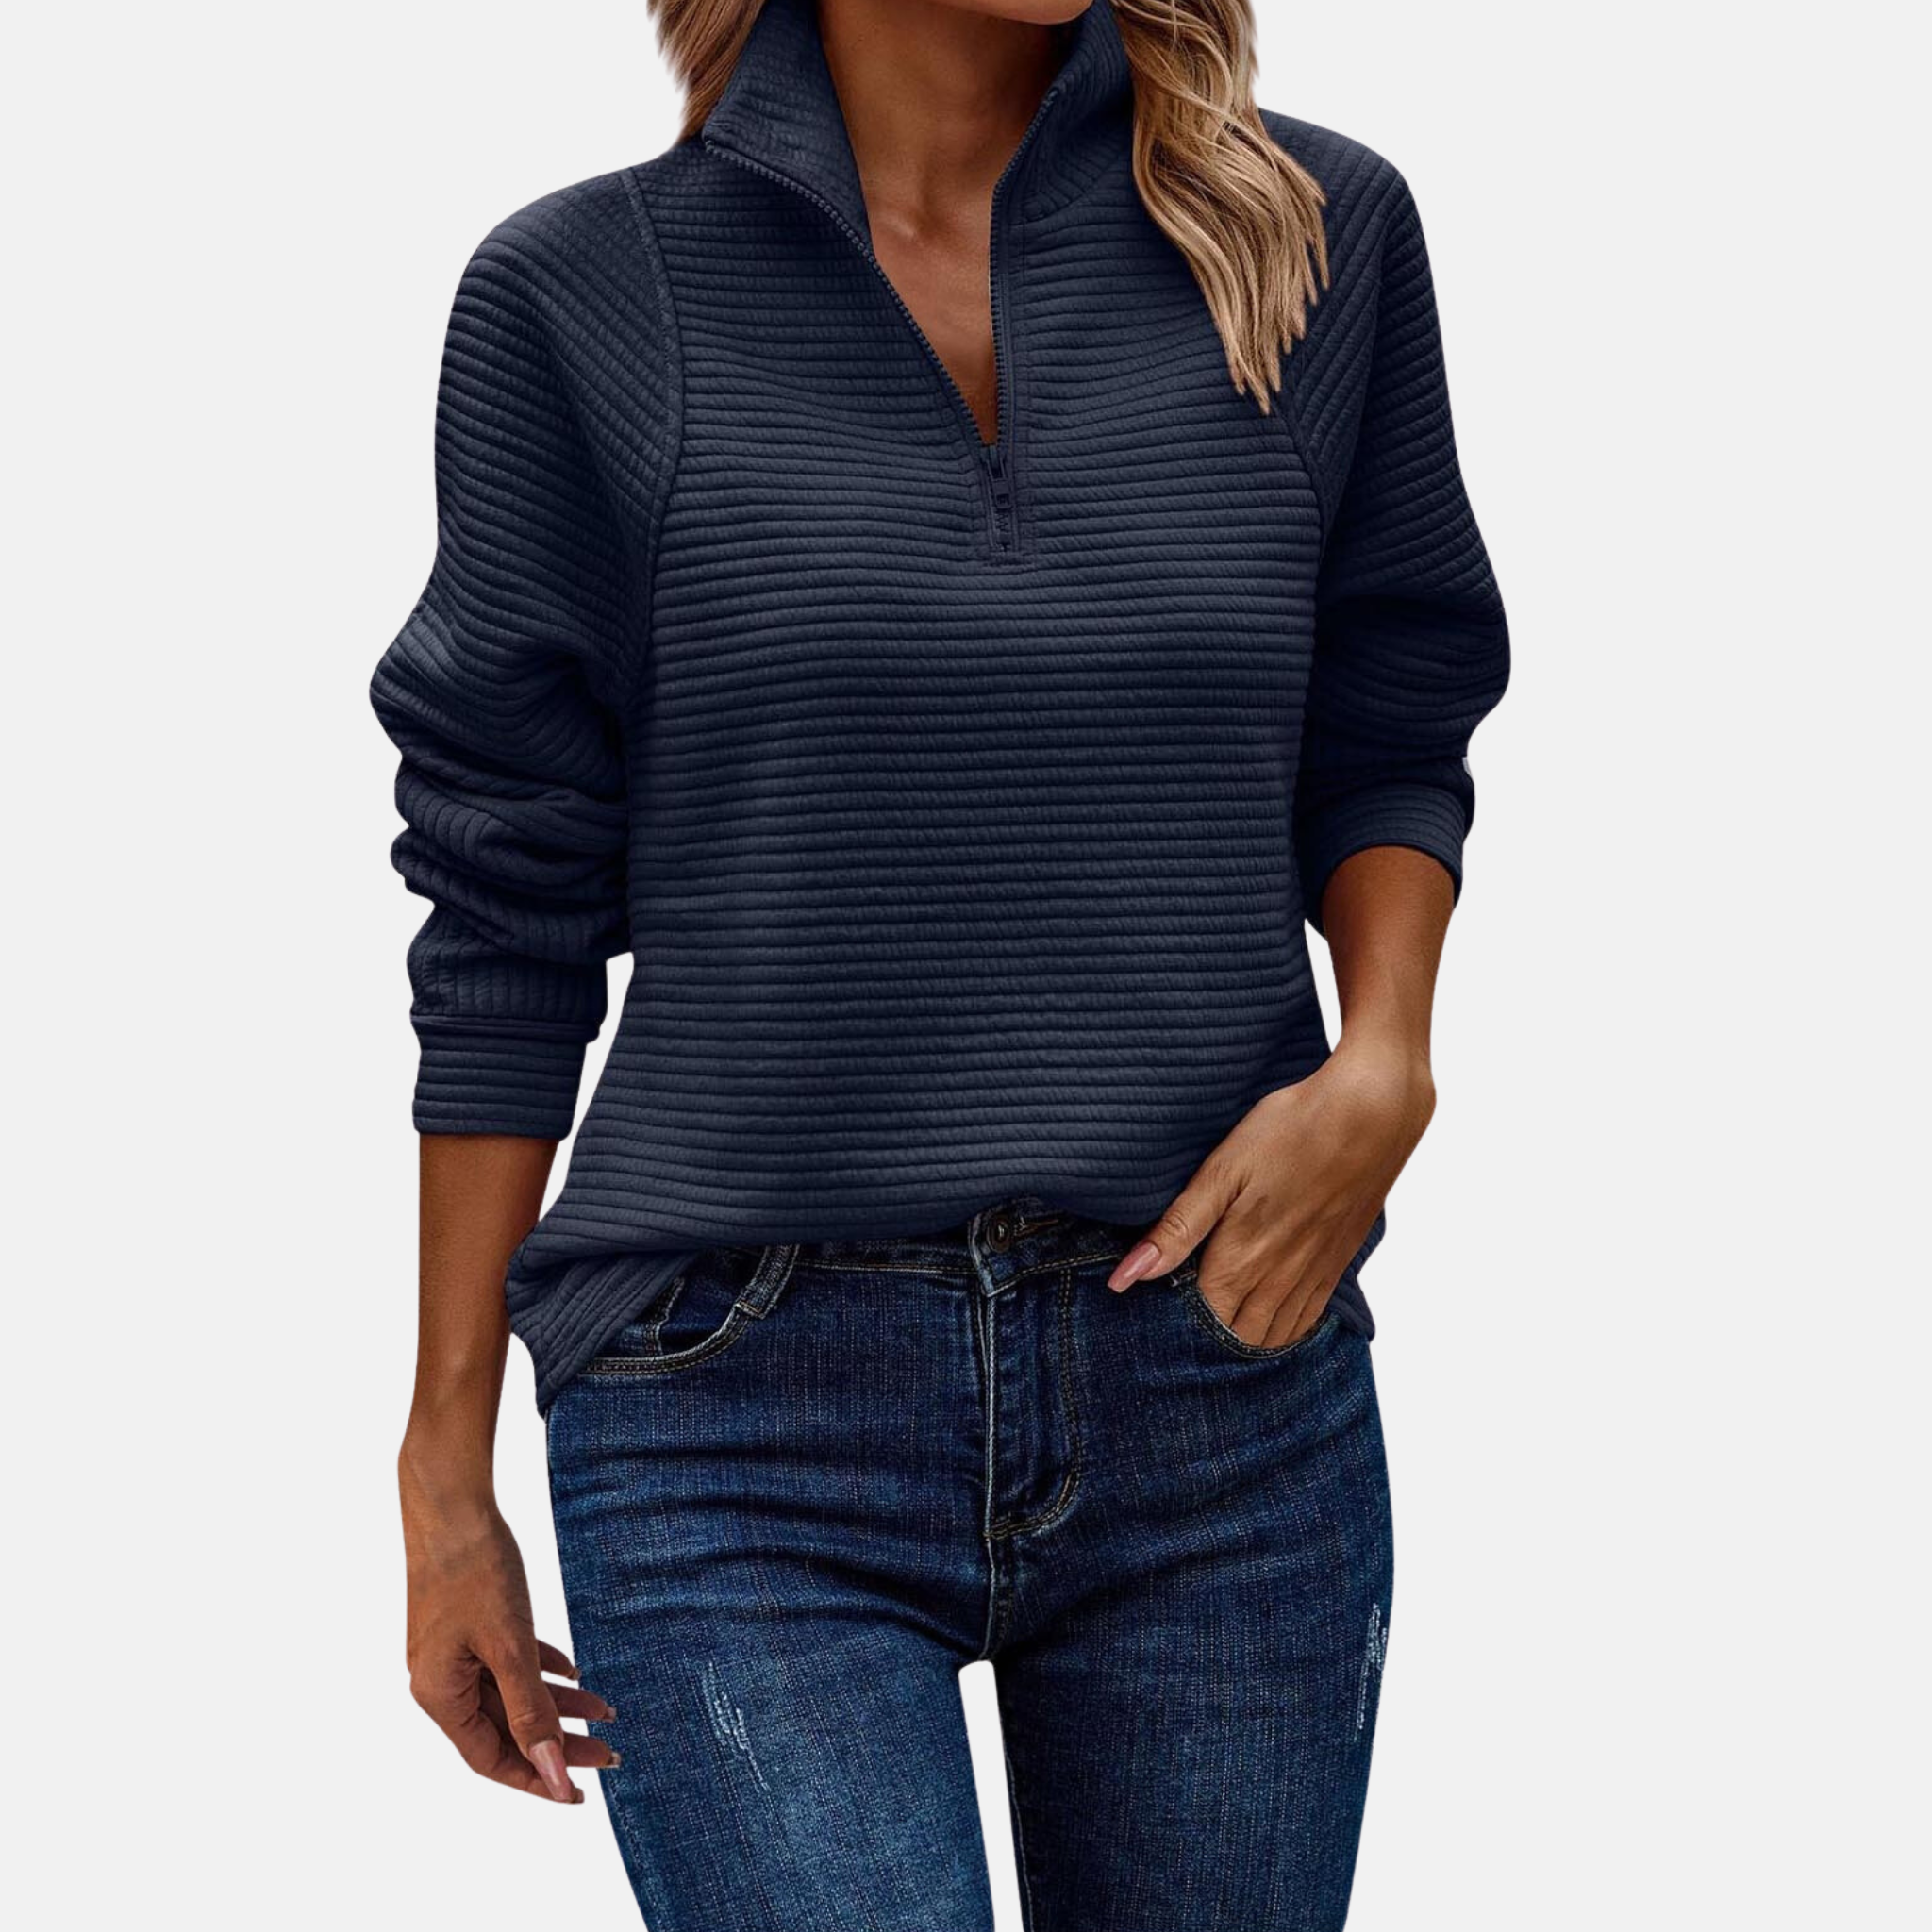 LAURA - Damen Zip-Pullover im Rippstrick-Design